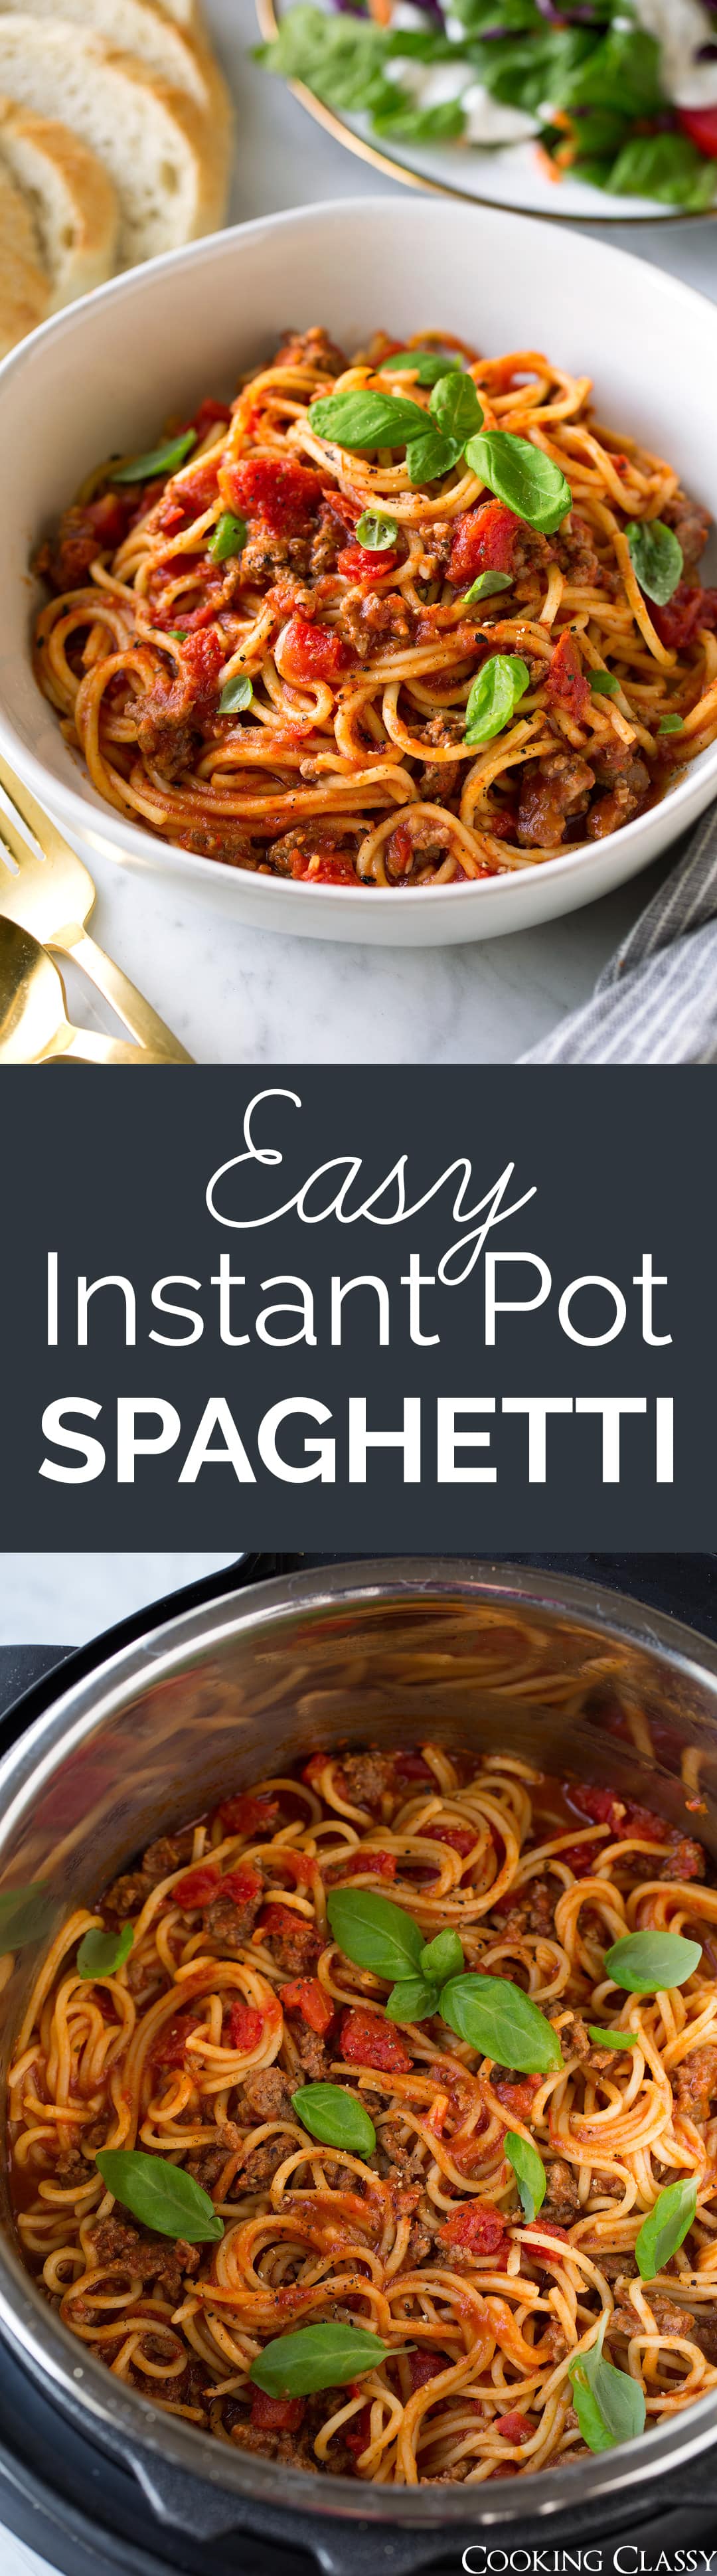 Instant Pot Spaghetti Recipe - Cooking Classy